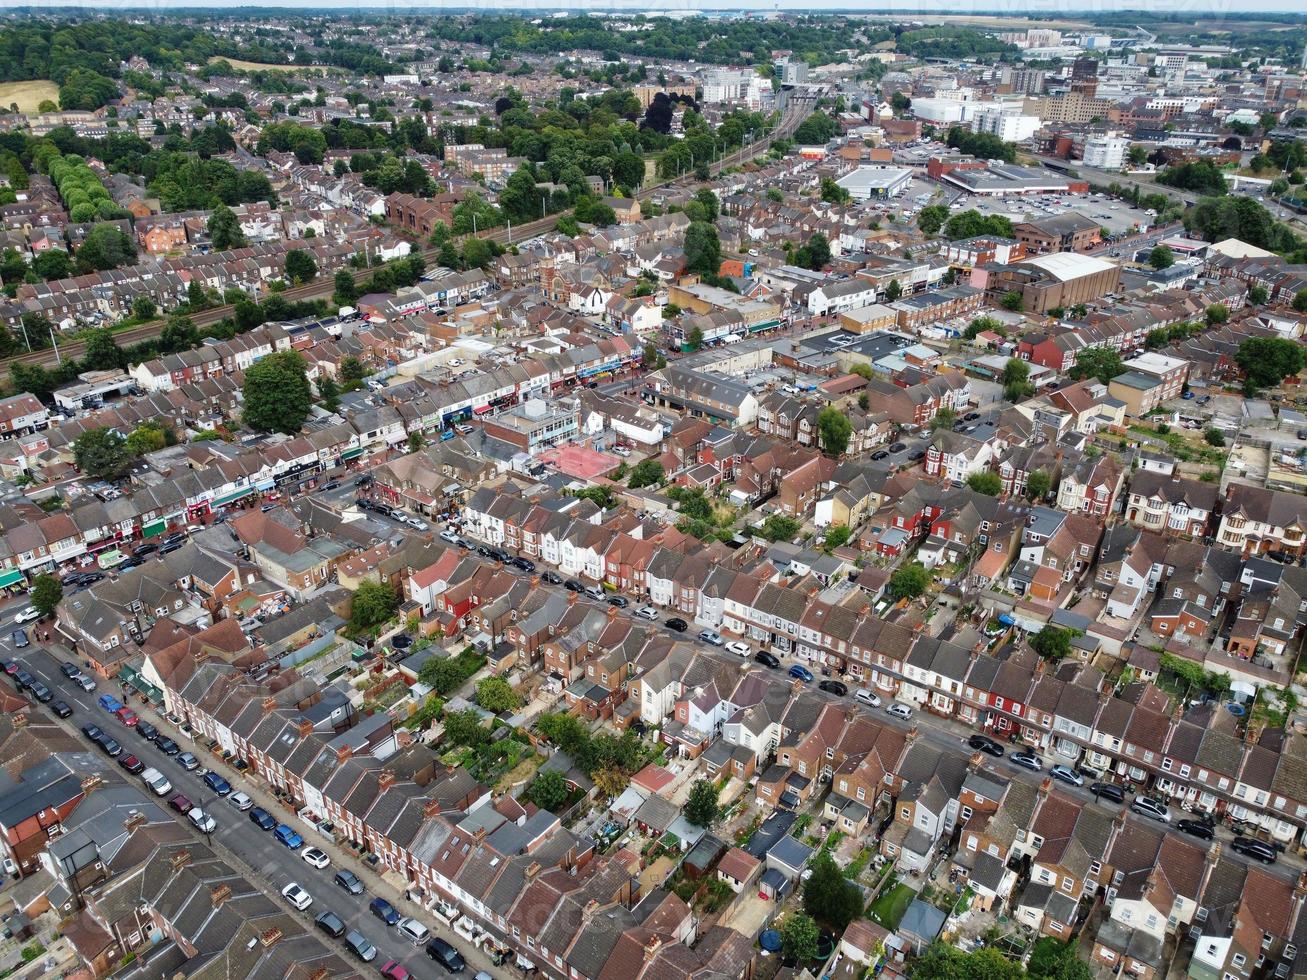 una ripresa aerea e una vista dall'alto della città di Luton, in Inghilterra, su una zona residenziale, seppellire il parco della comunità asiatica di pakistani e kashmir. foto